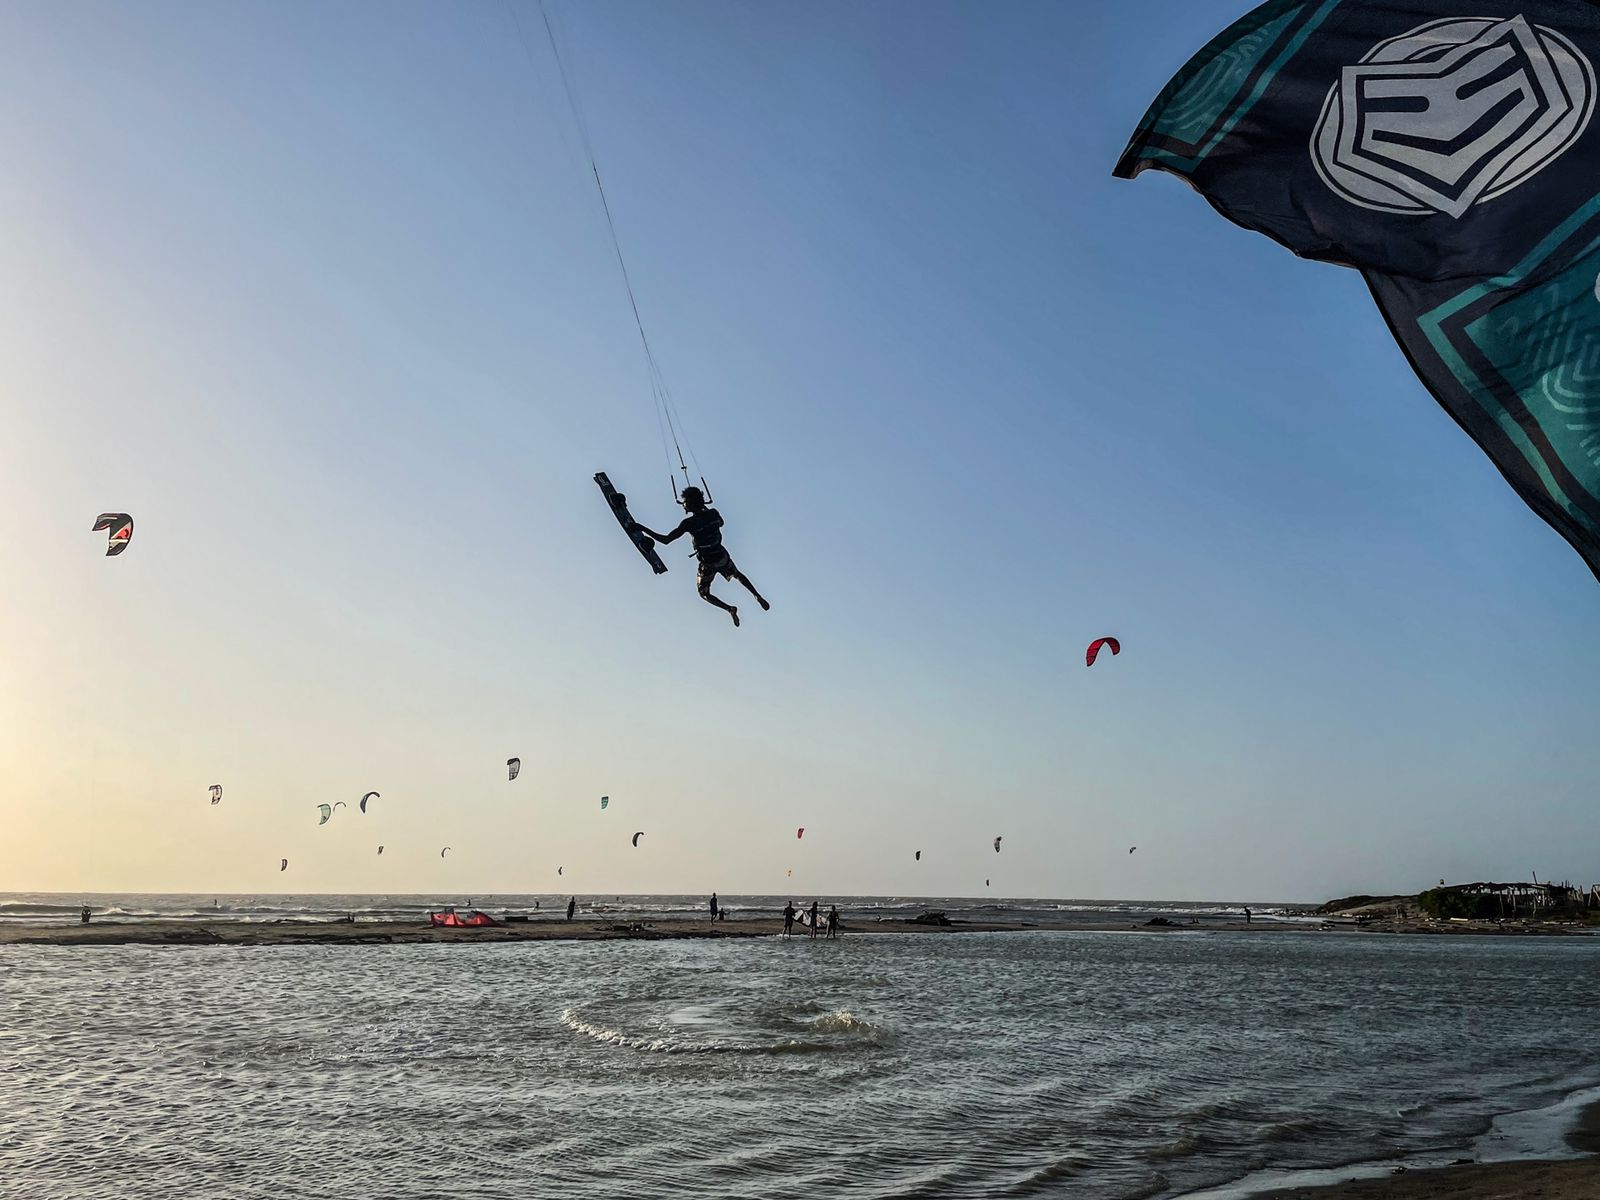 kitesurfer jumping